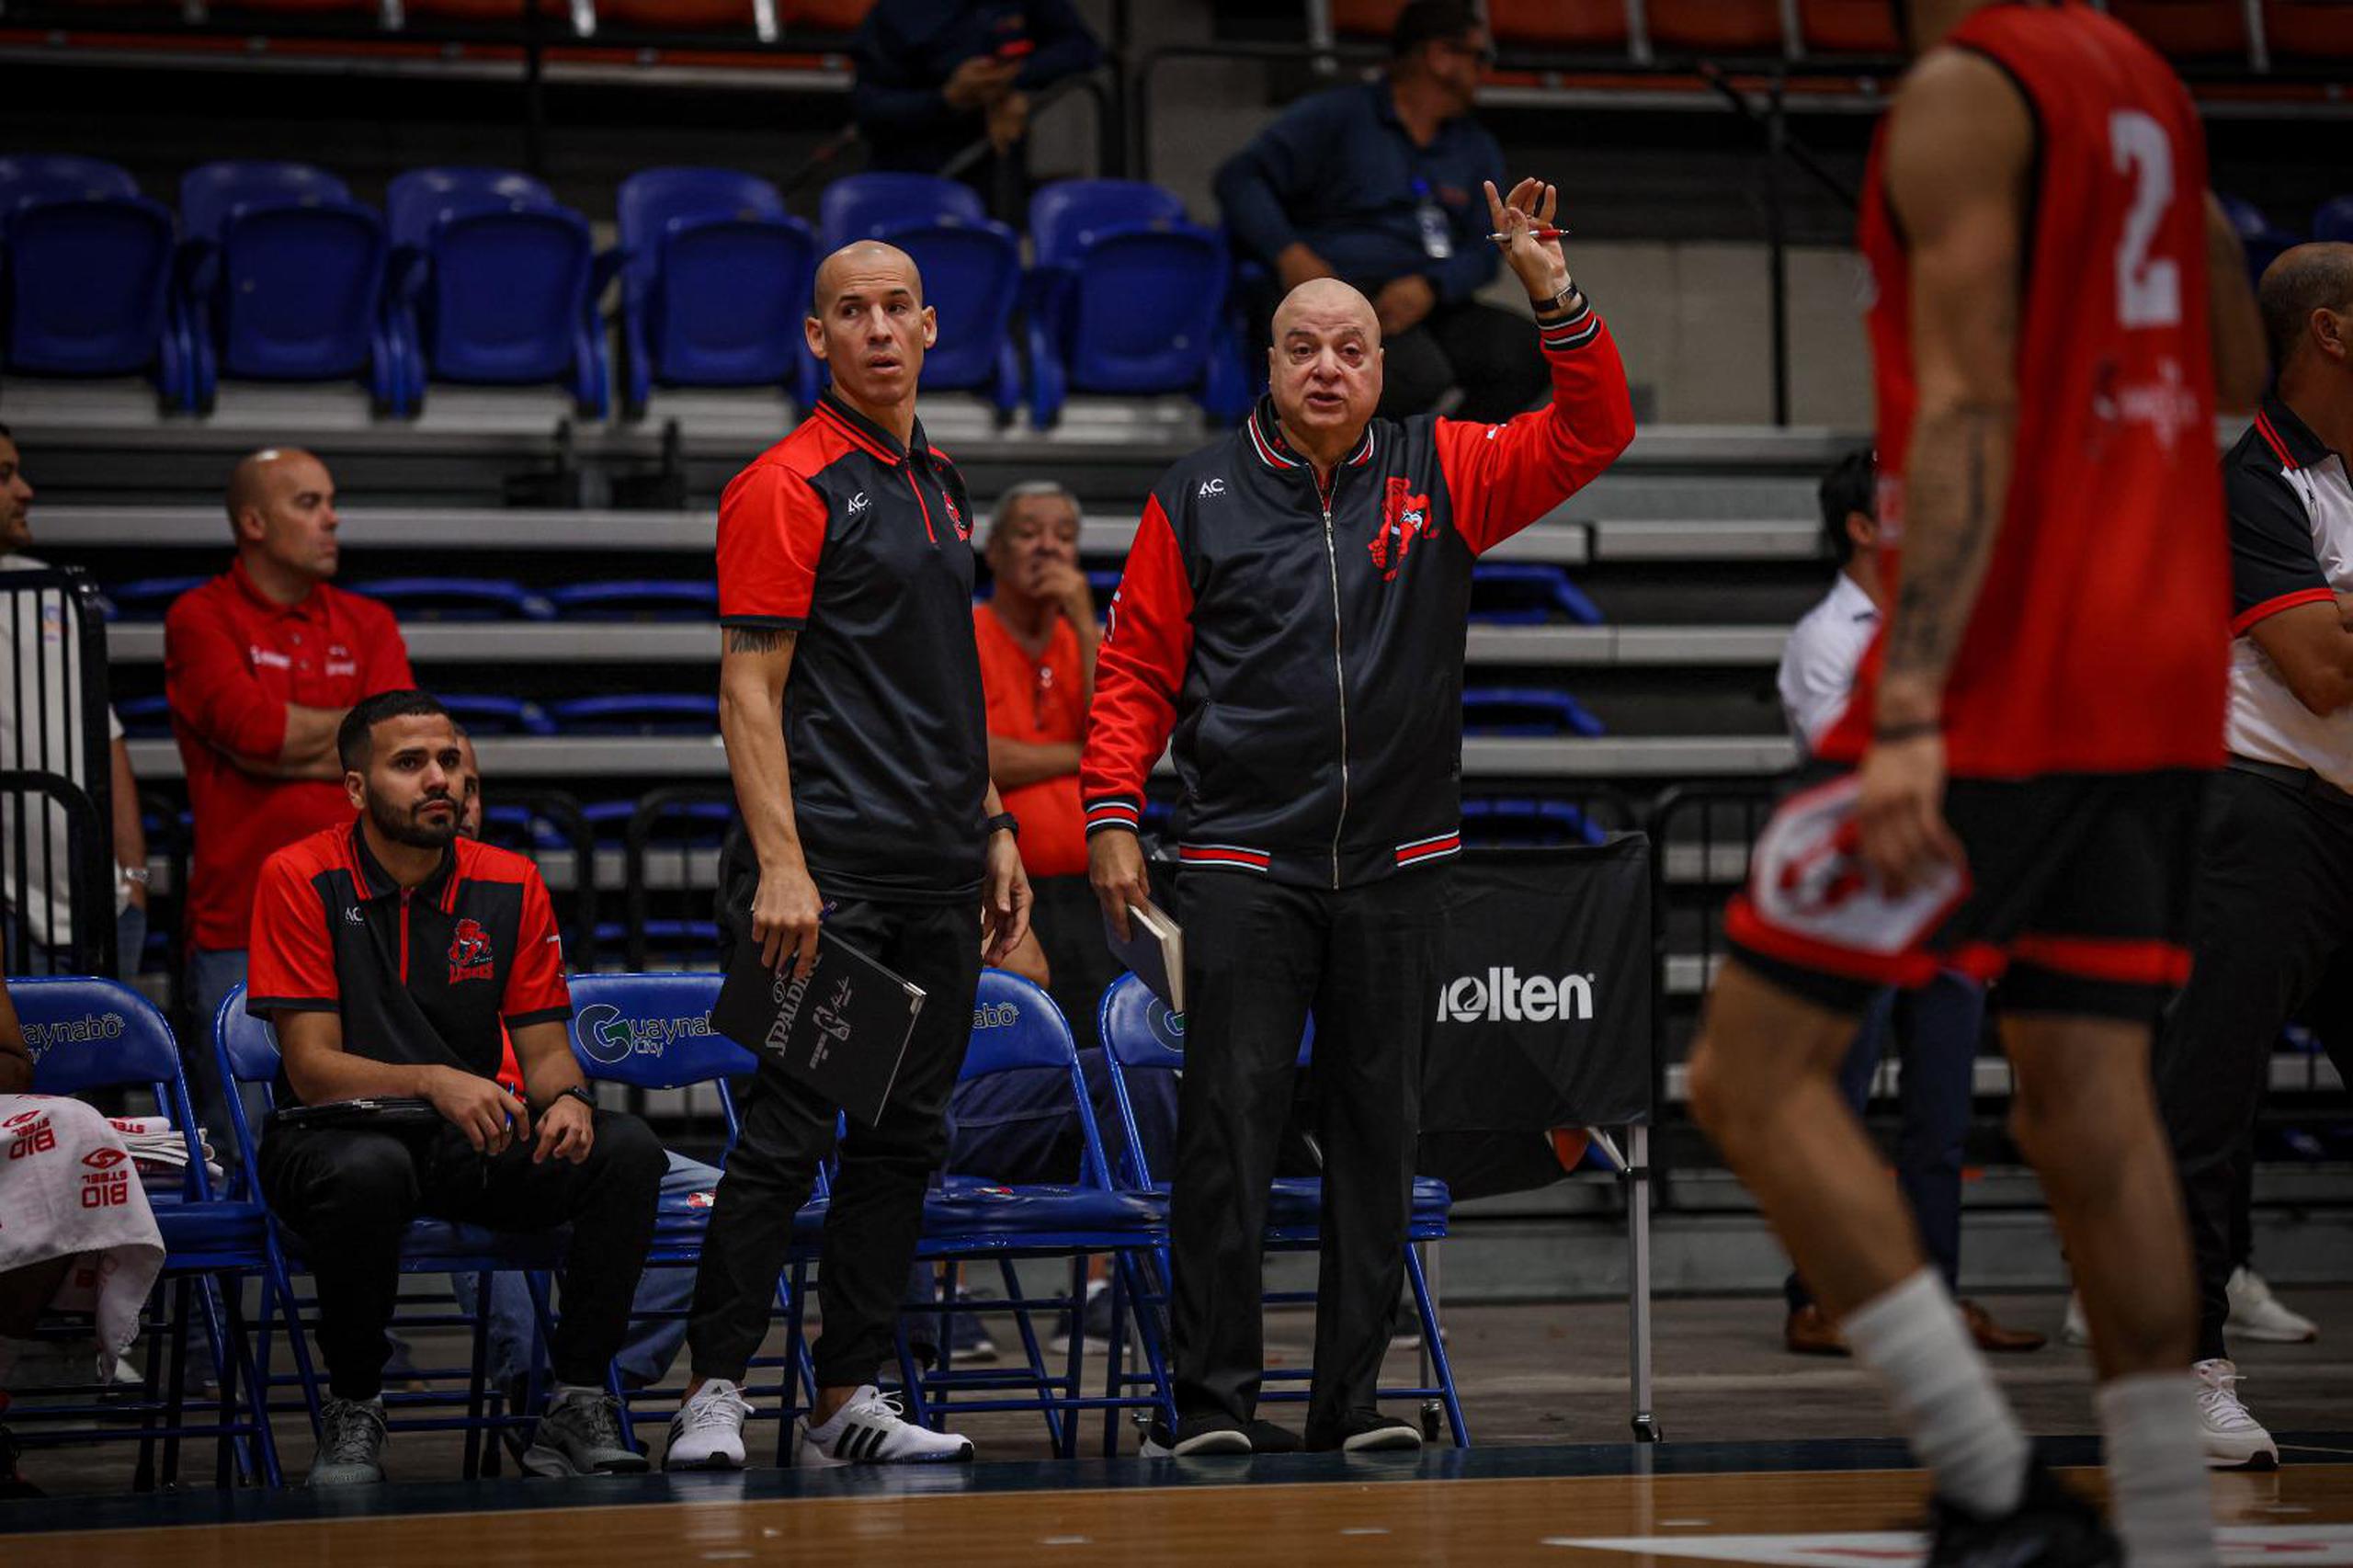 Carlos Morales, con la mano izquierda en alto, y con el asistente Carlos Rivera a su lado, asume su primer trabajo como entrenador en propiedad desde el 2000.